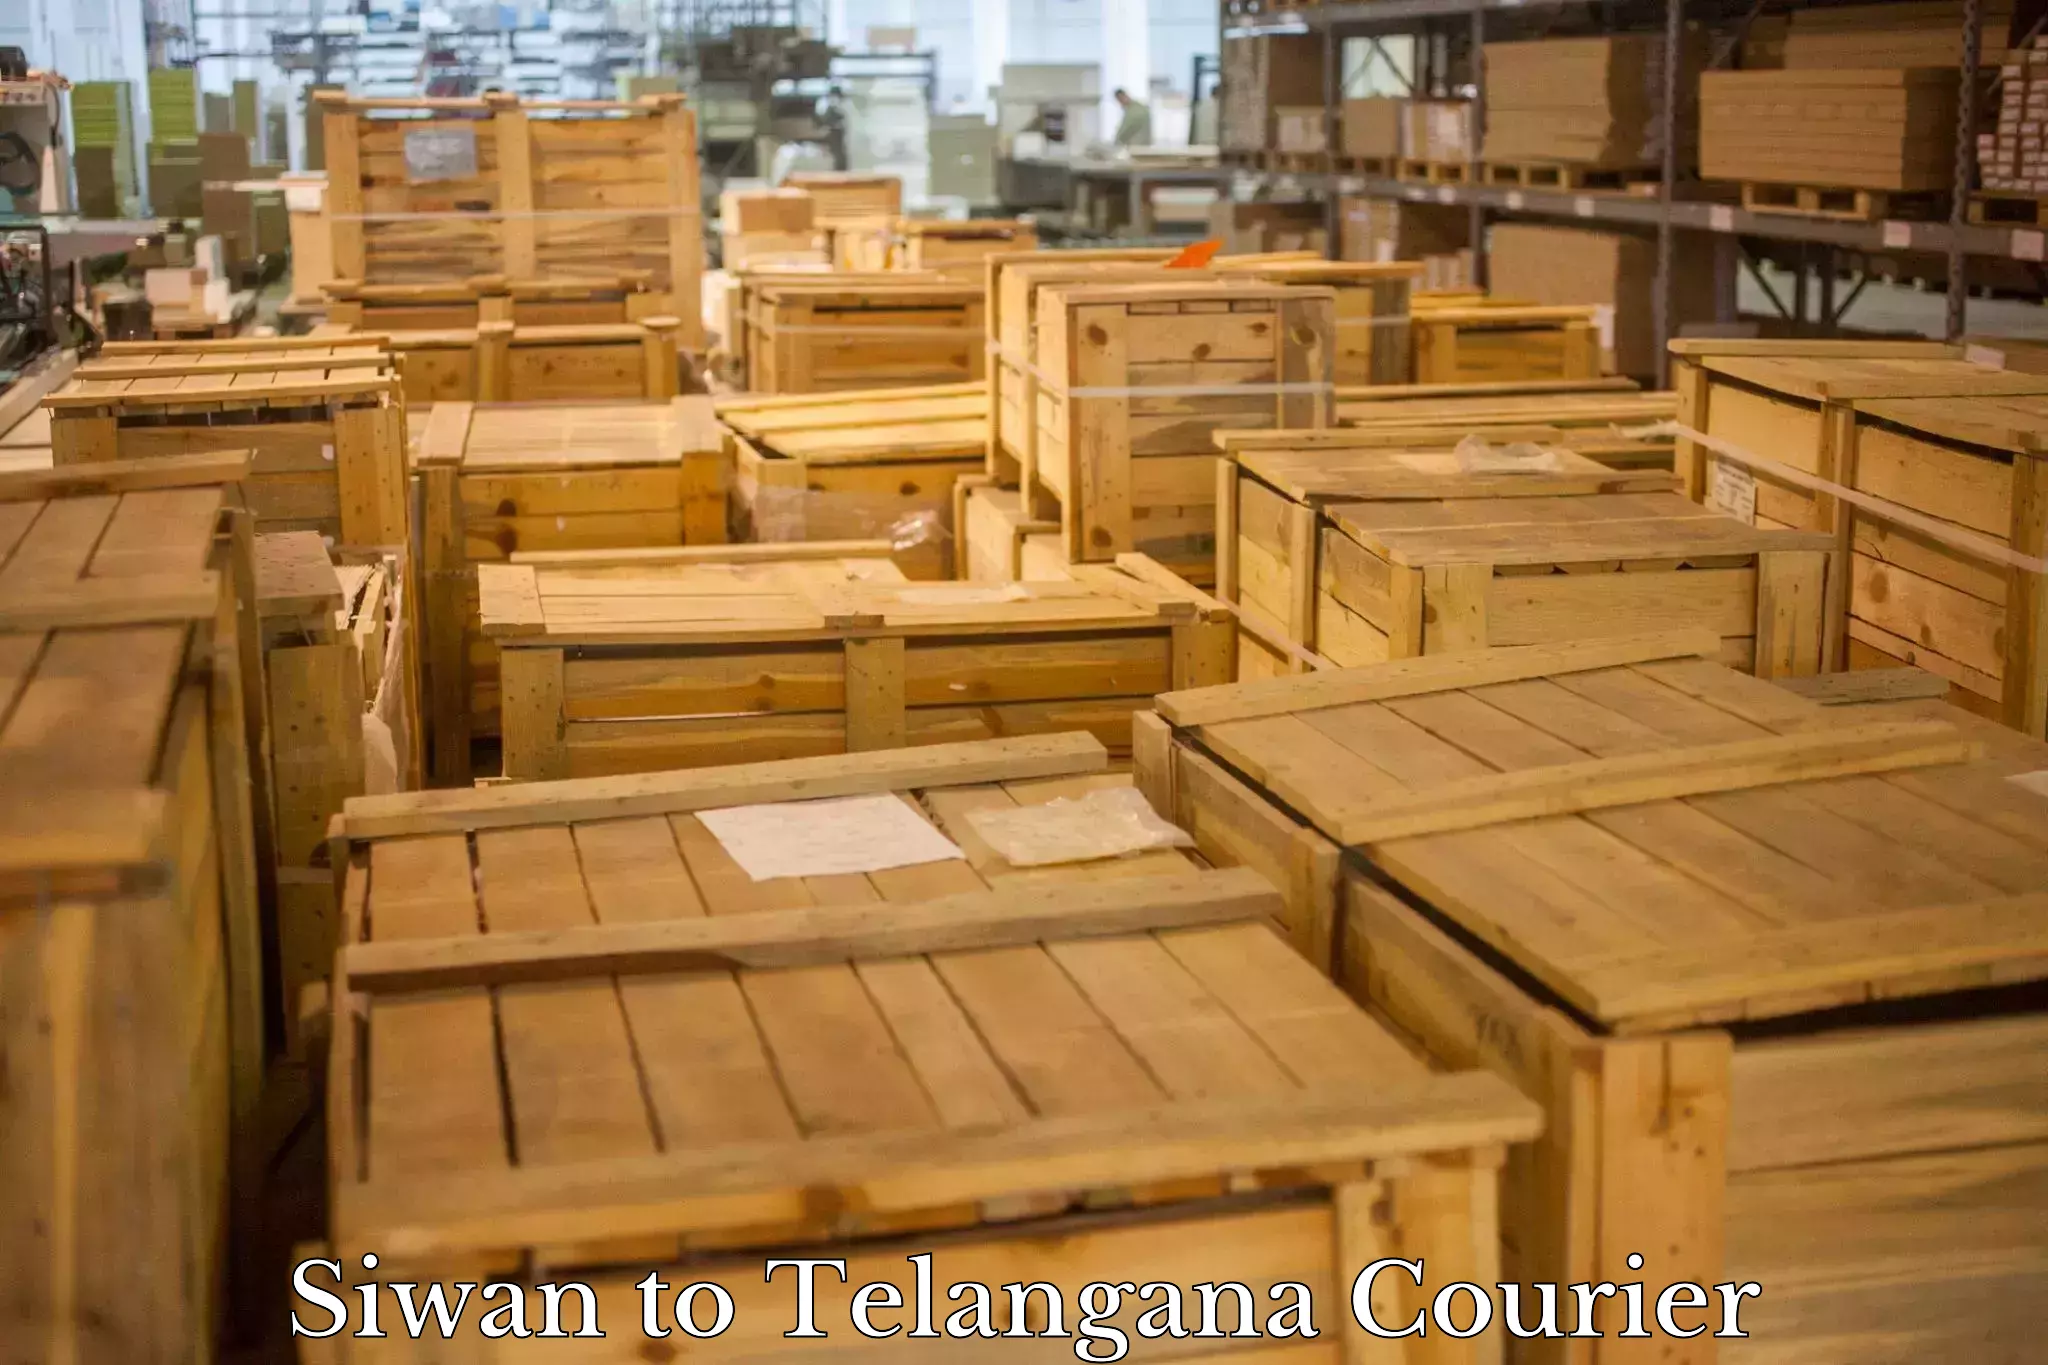 Regular parcel service Siwan to Telangana